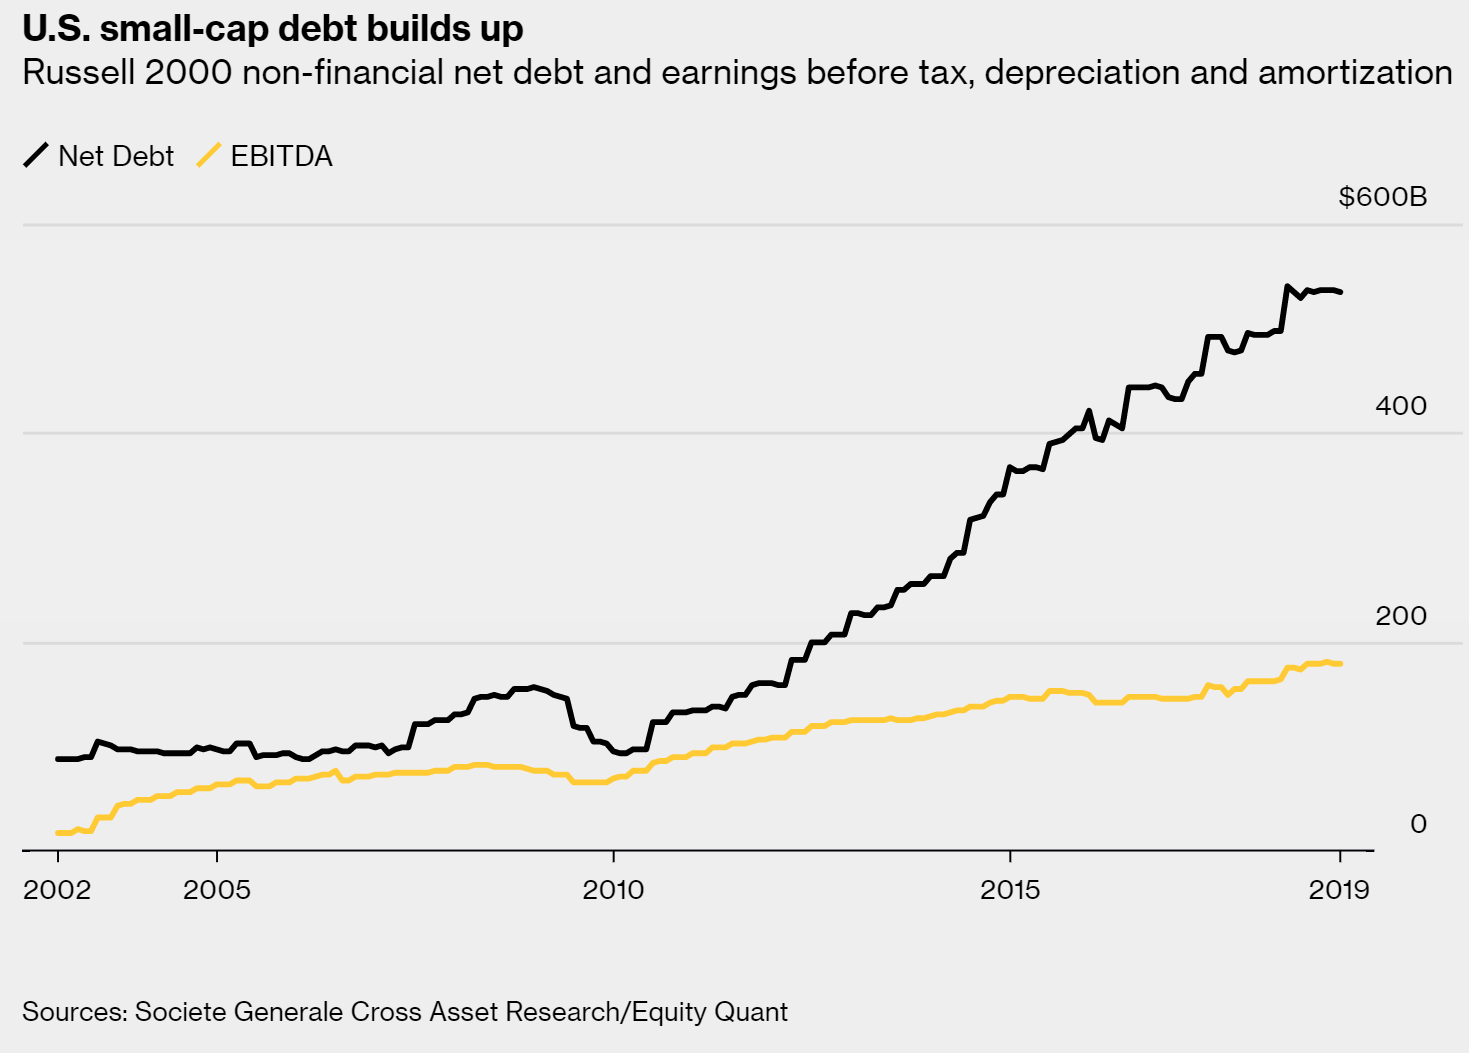 U.S. small-cap debt builds up, 2002-2019